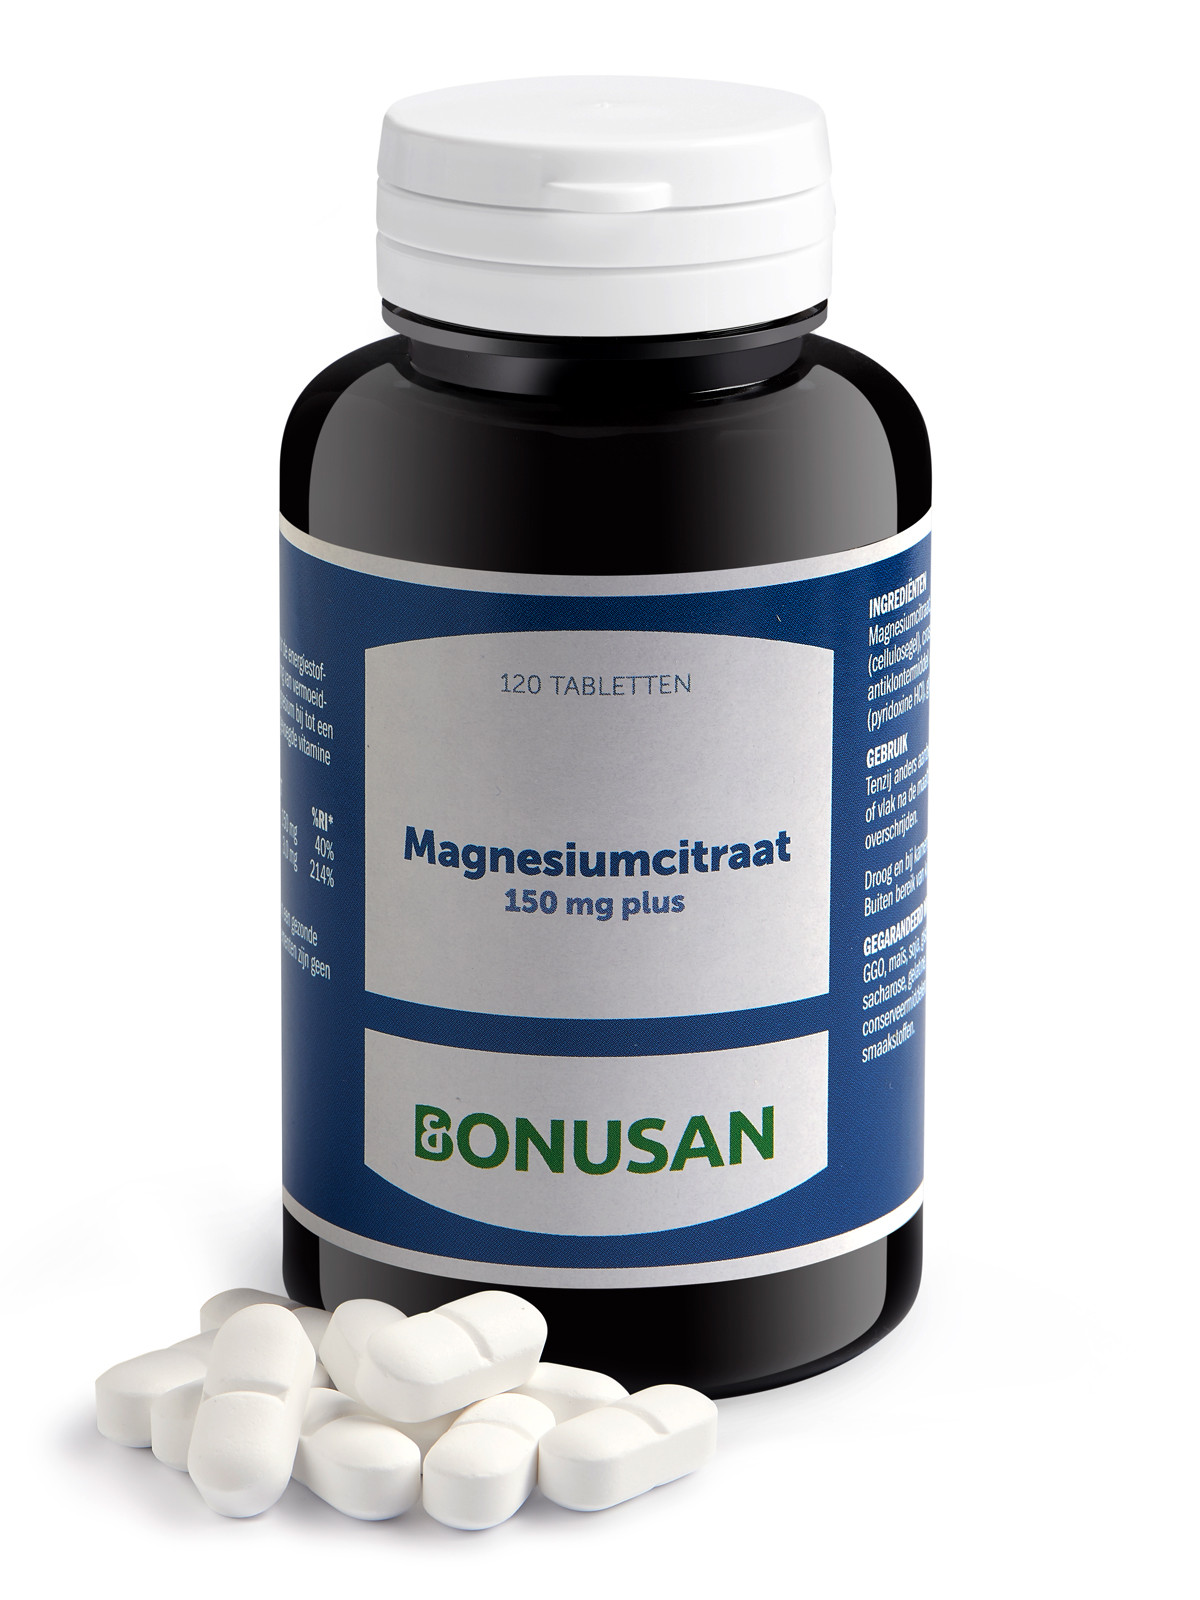 Bonusan - Magnesiumcitraat 150 mg plus - 120 stuks